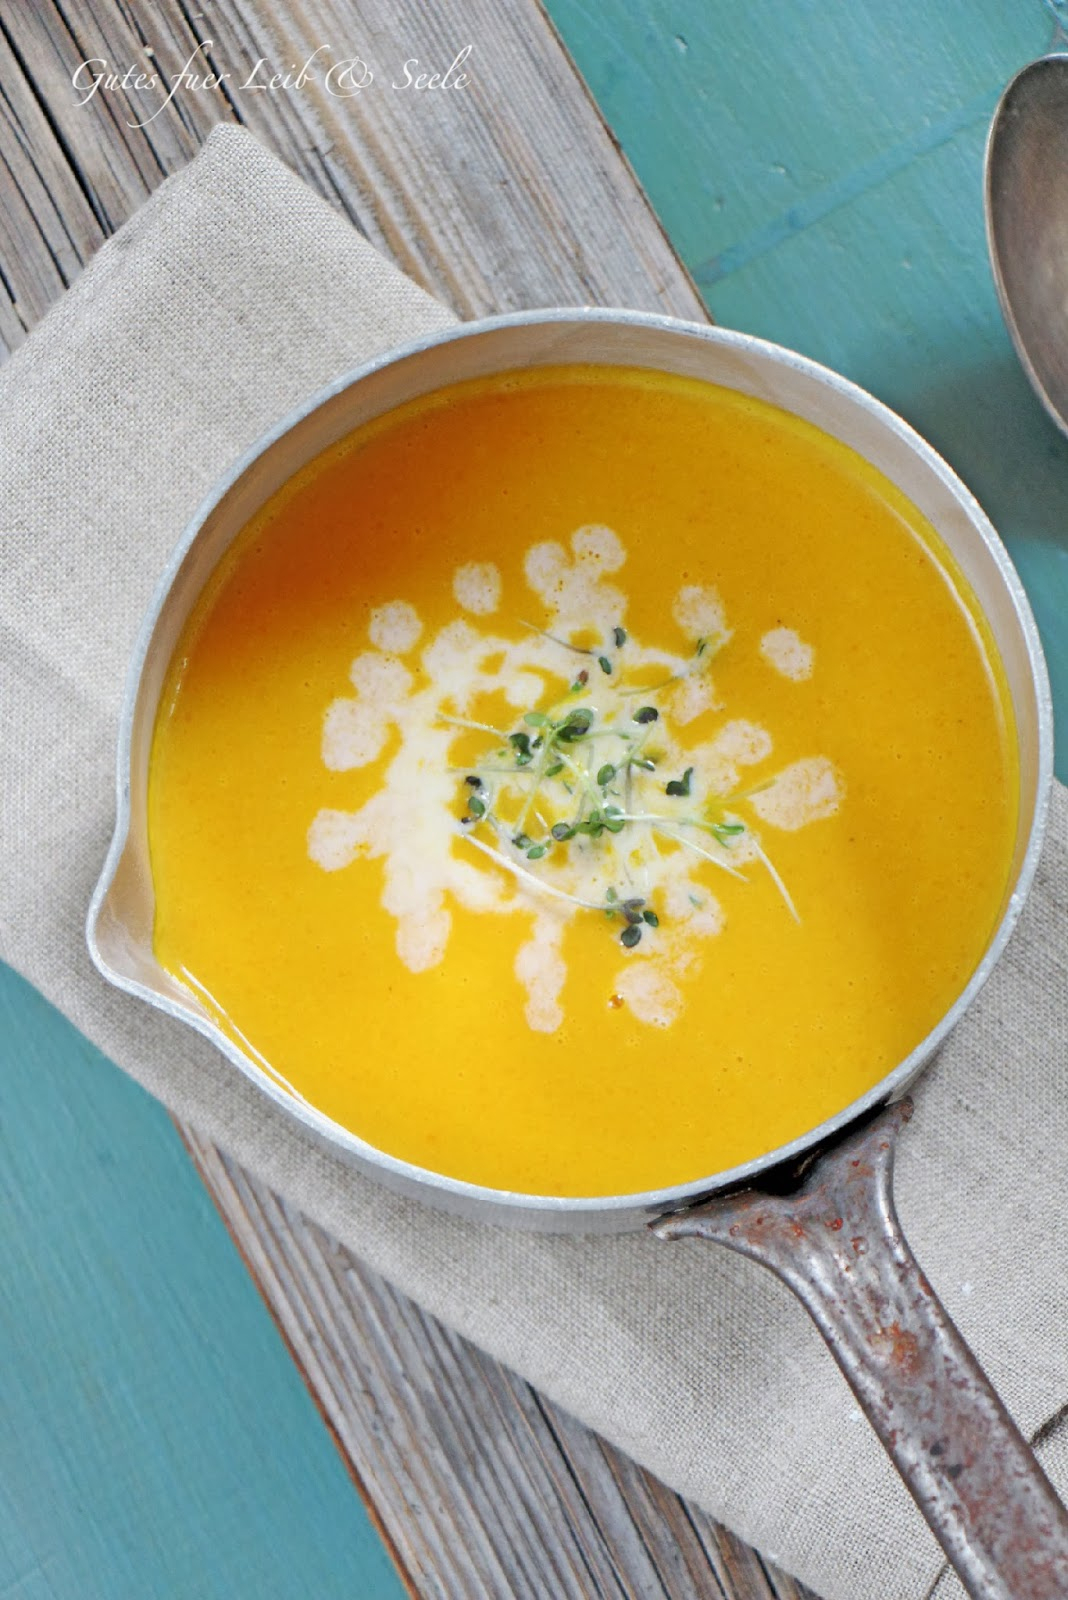 Gutes Für Leib &amp; Seele: Karotten-Kokos-Ingwer-Orangen-Suppe bei Rezept Karotten Orangen Ingwer Suppe